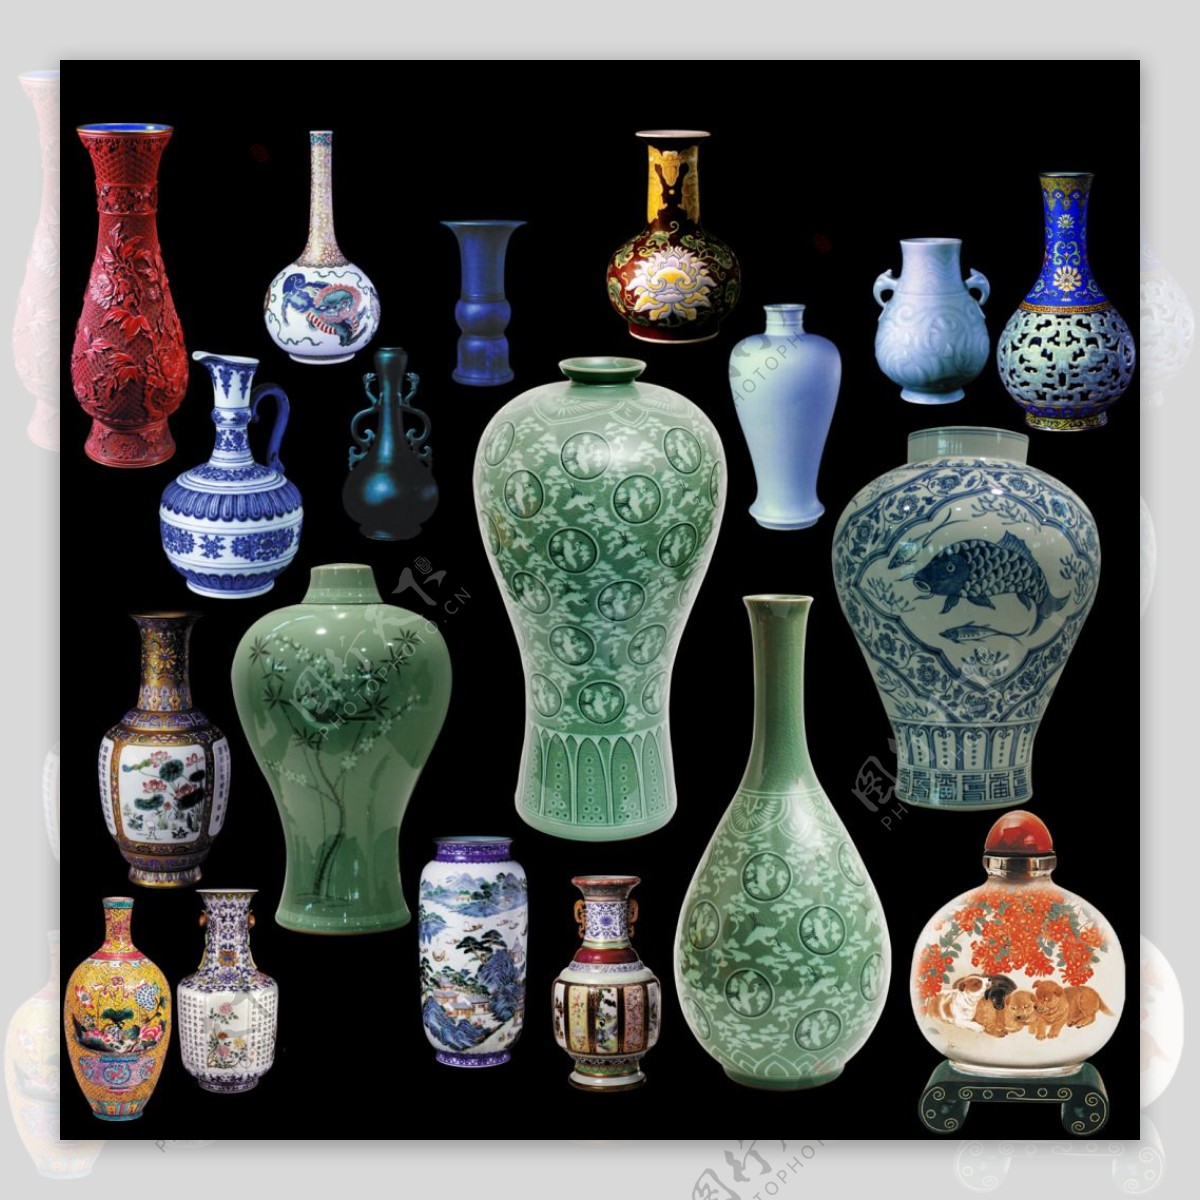 古典花瓶